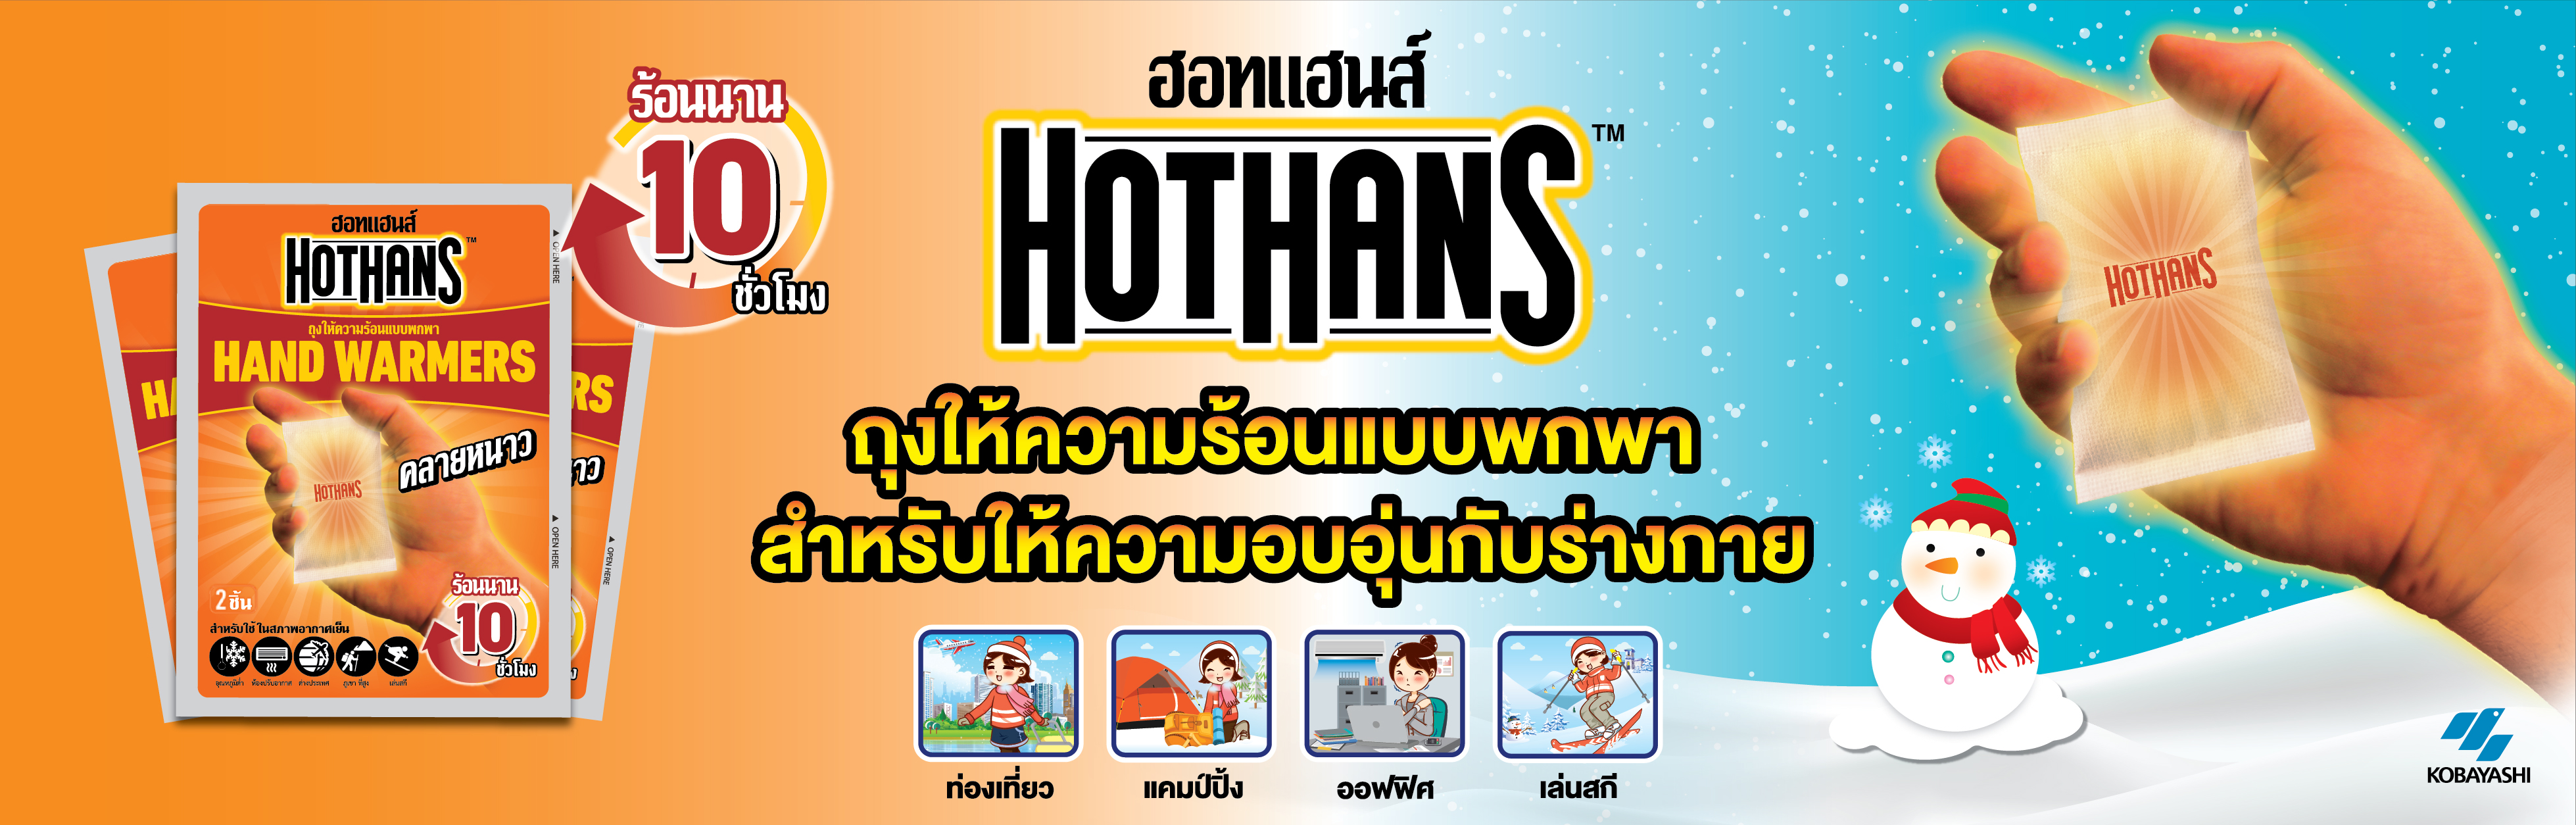 hot-hands-01